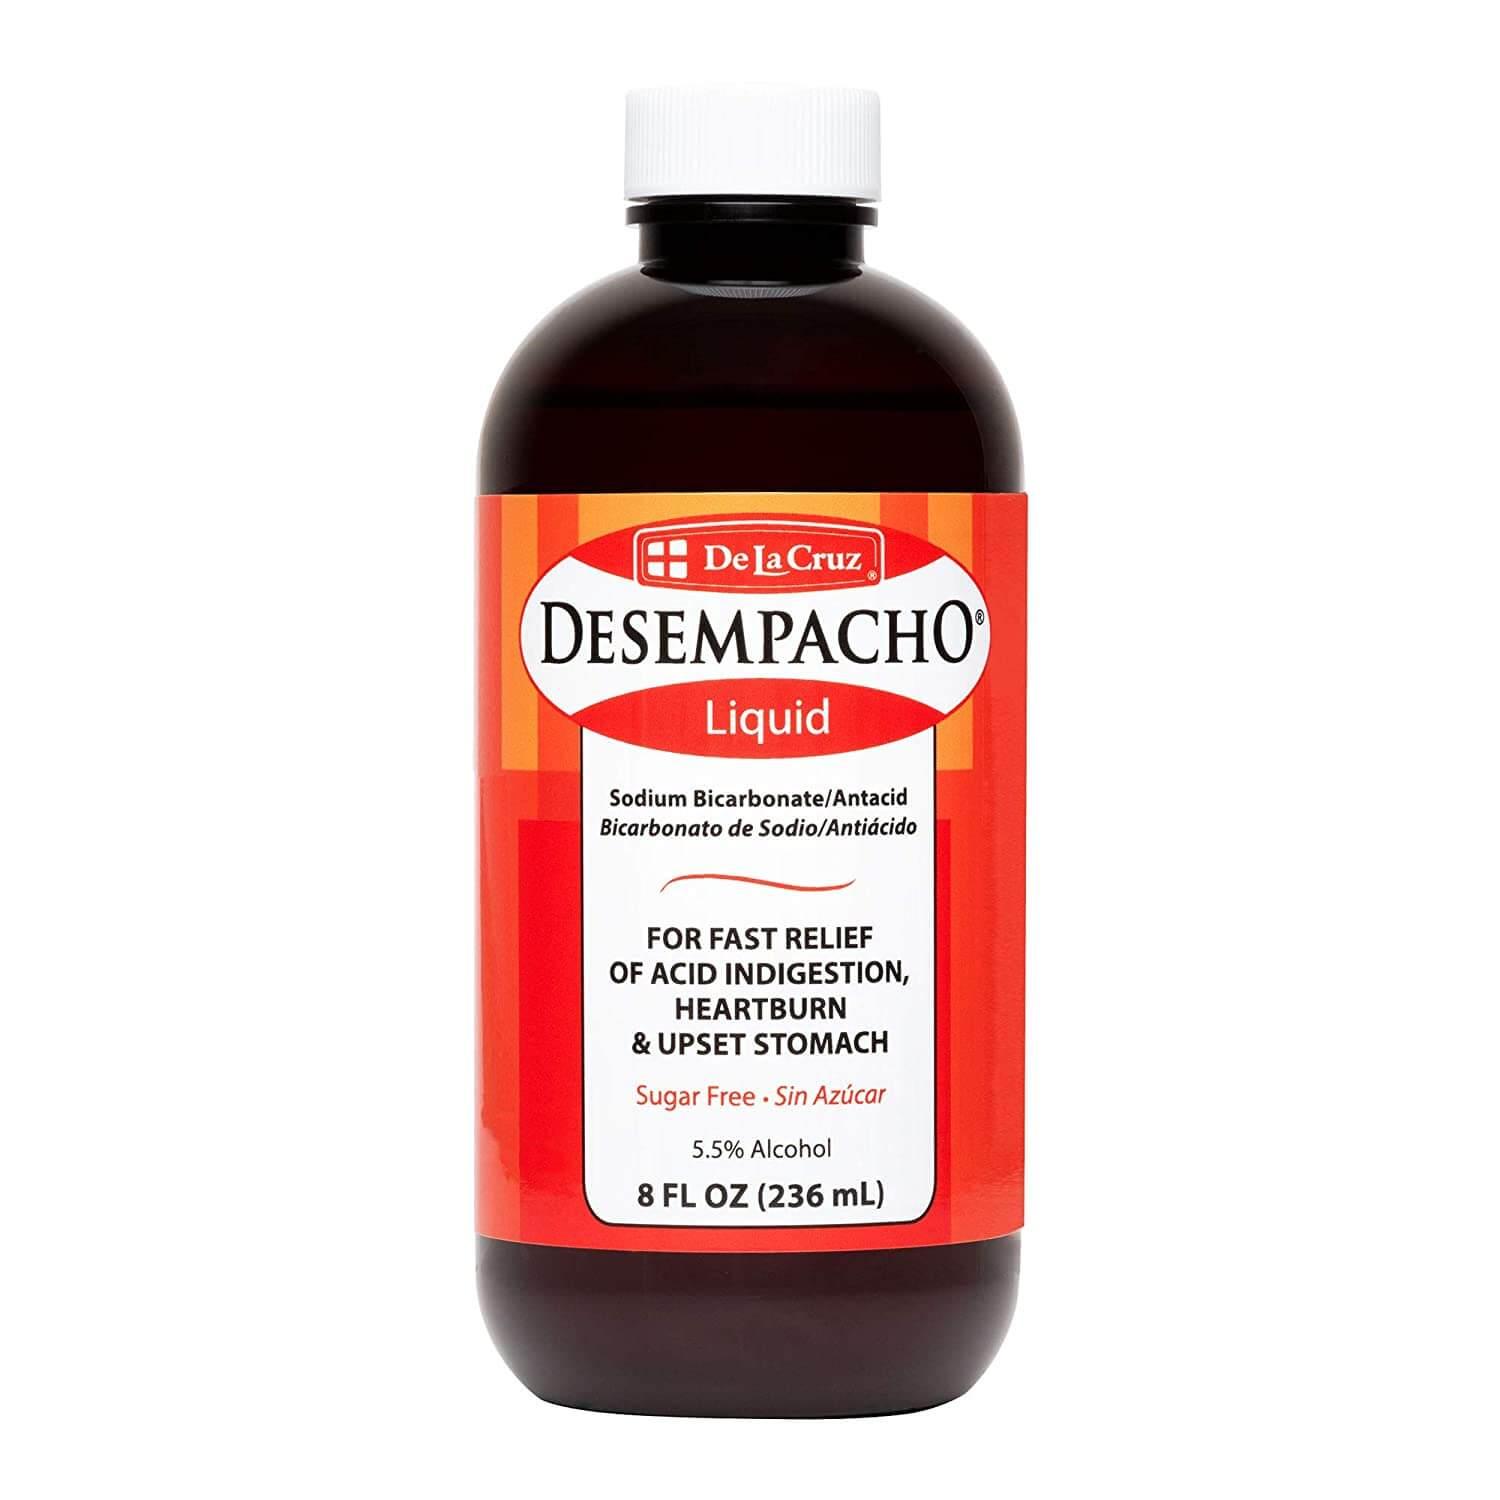 De La Cruz - Desempacho - Liquid Sodium Bicarbonate / Antiacid 8oz